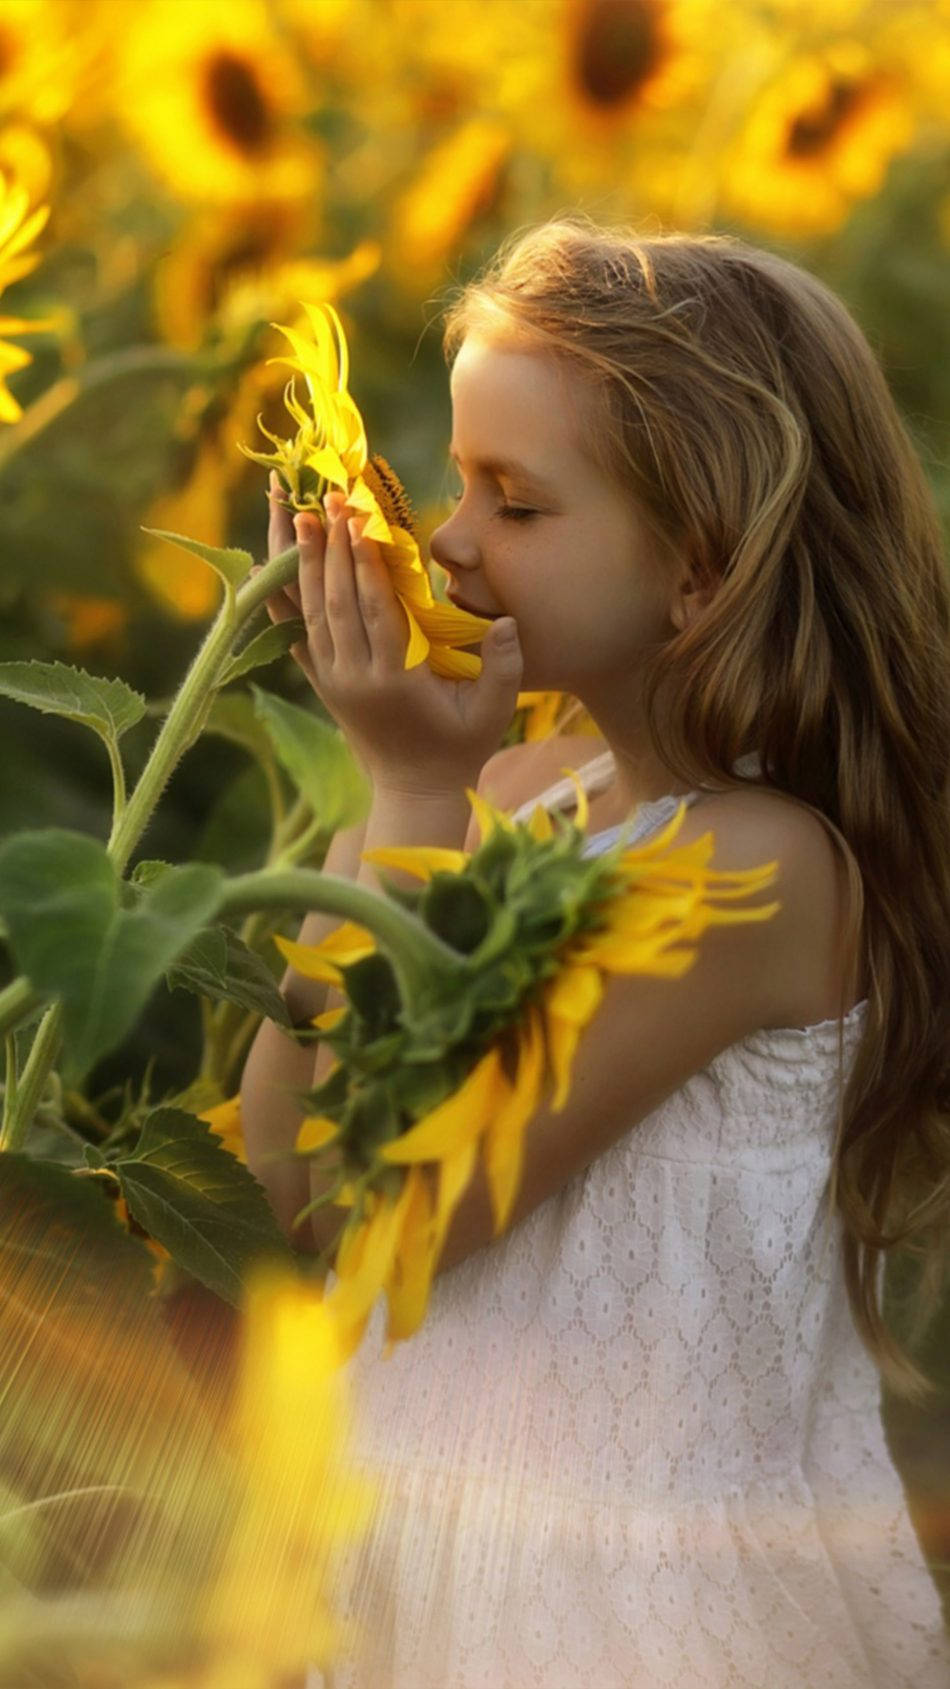 Girl Child Smelling Giant Sunflowers Wallpaper